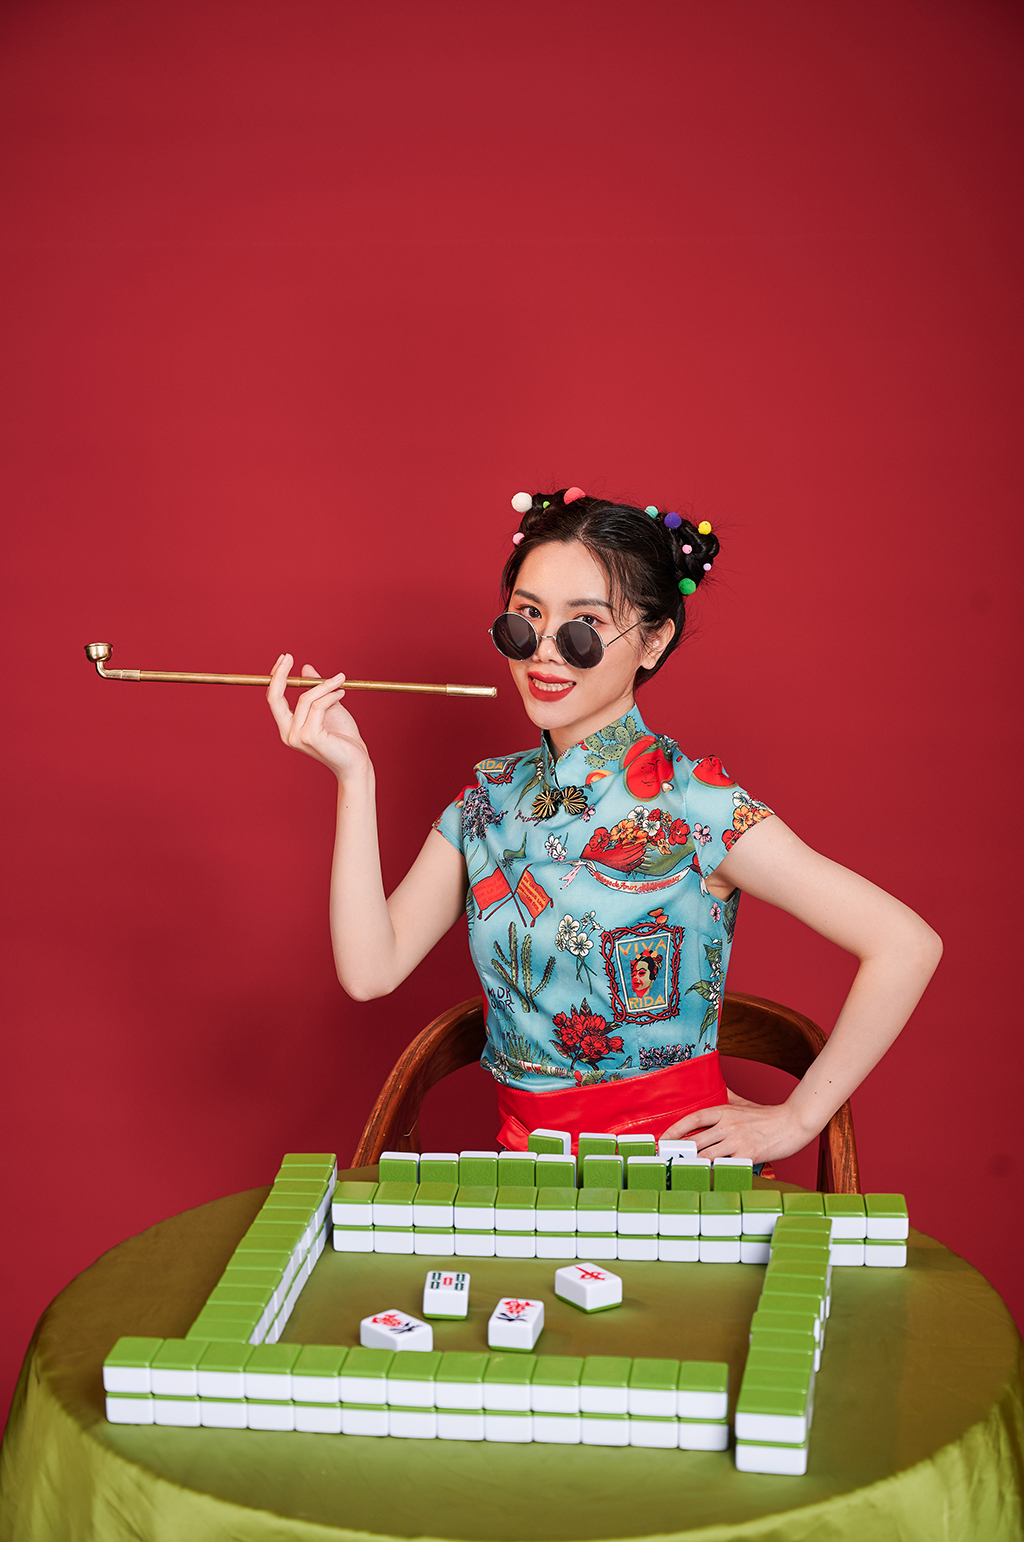 旗袍国潮美女麻将眼镜扇子造型商业摄影图